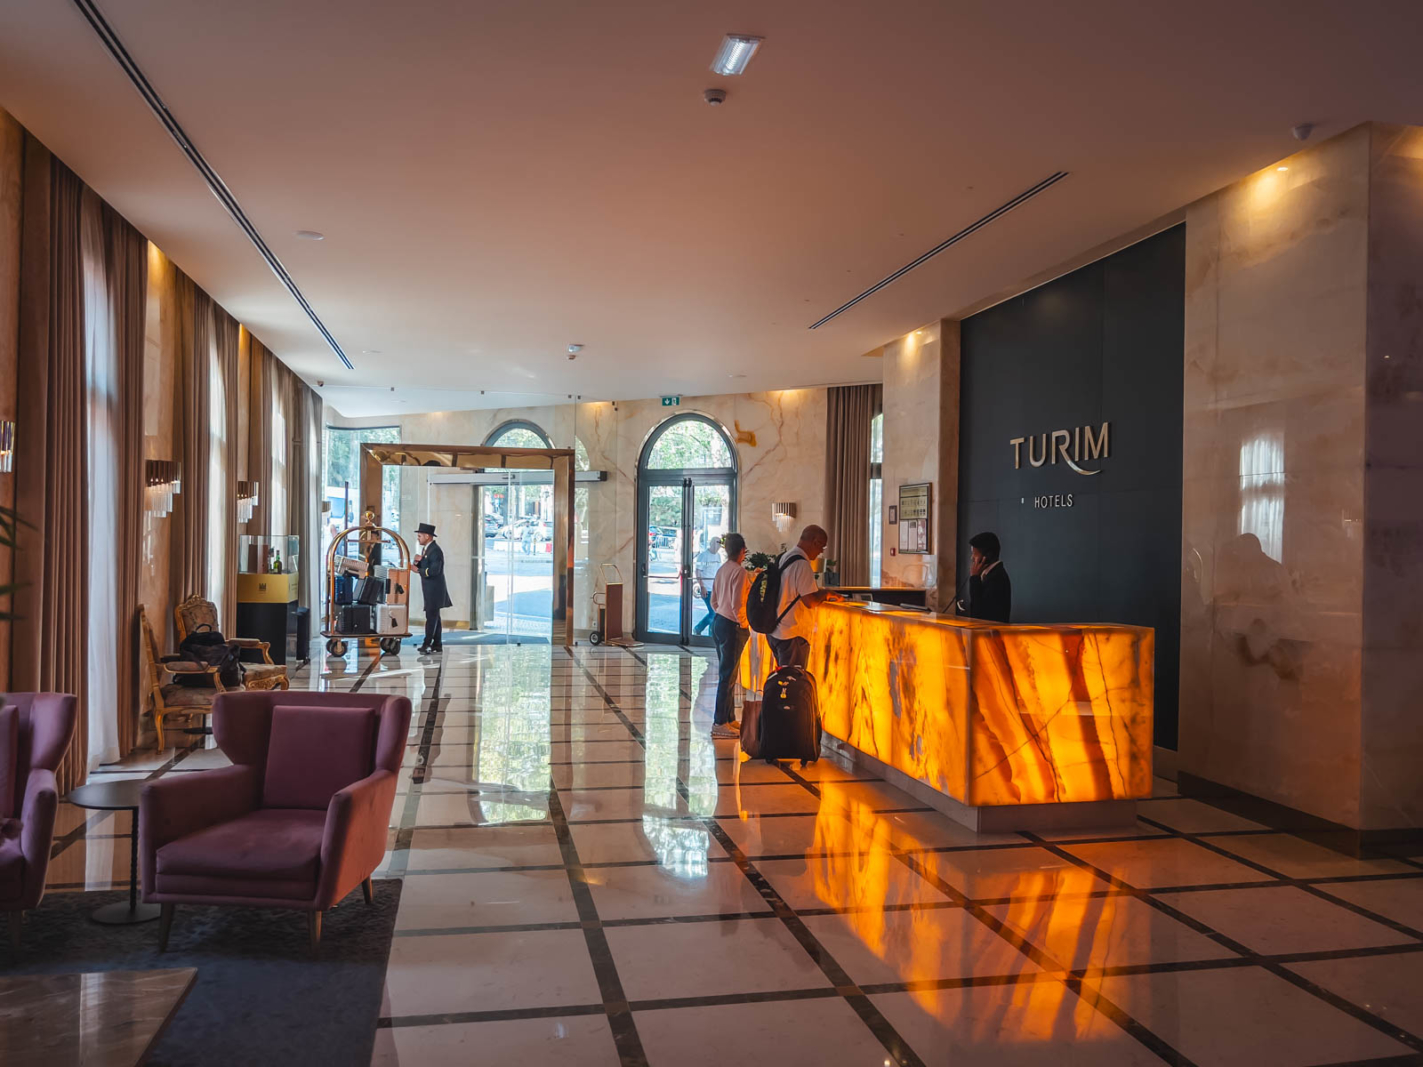 Turim Hotel in Lisbon Portugal